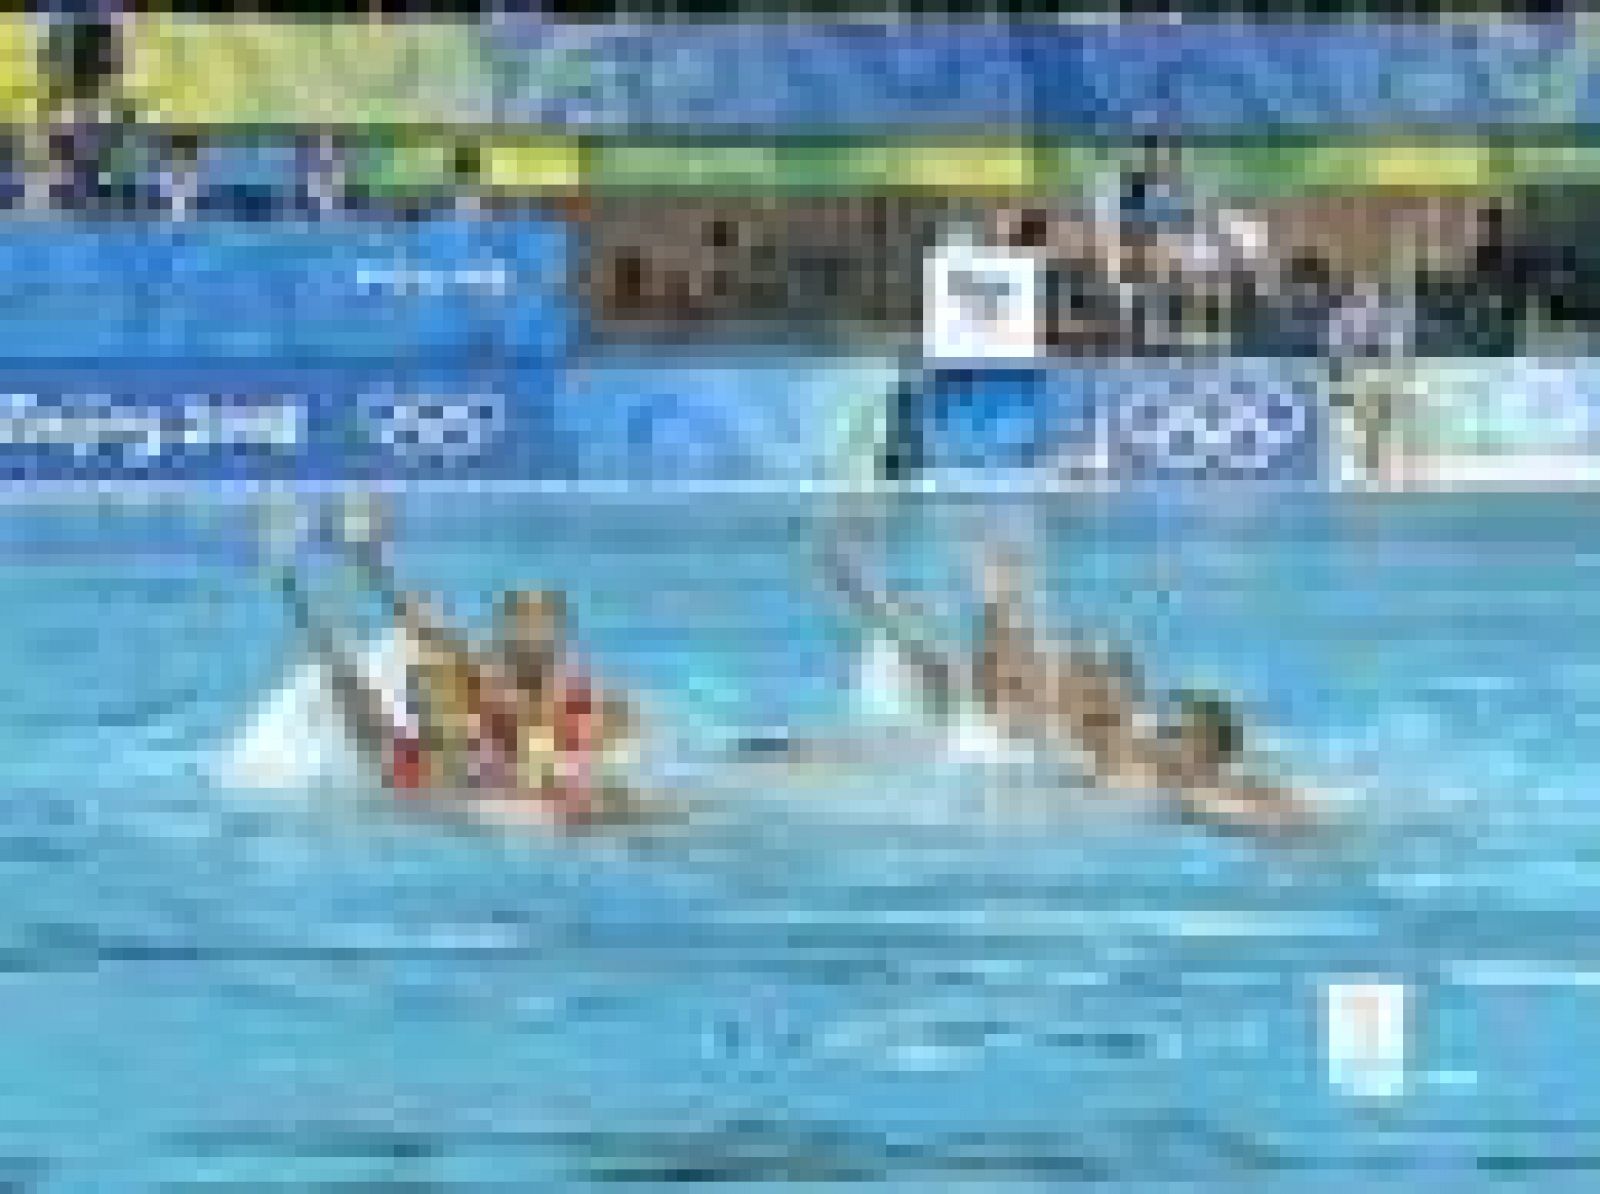 Las nadadoras españolas, durante la ejecución de la rutina artística. 